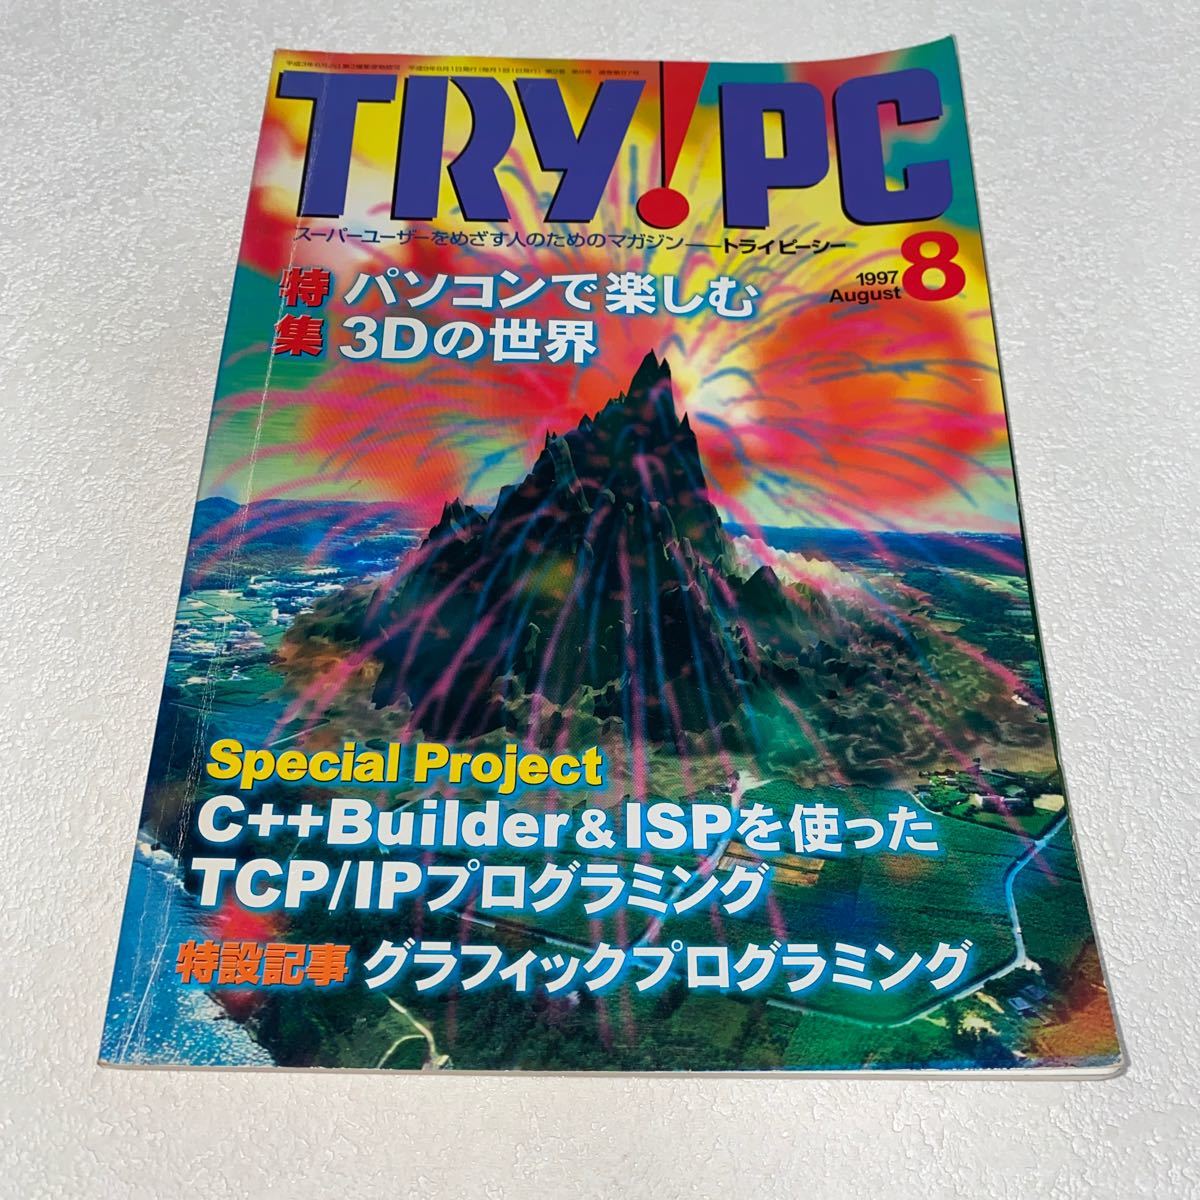 15 TRY お買い得モデル PCトライピーシー スーパーユーザーを目指す人の為のマガジン1997年8月号 希少 特集パソコンで楽しむ3Dの世界C++BuilderISP TCP IP